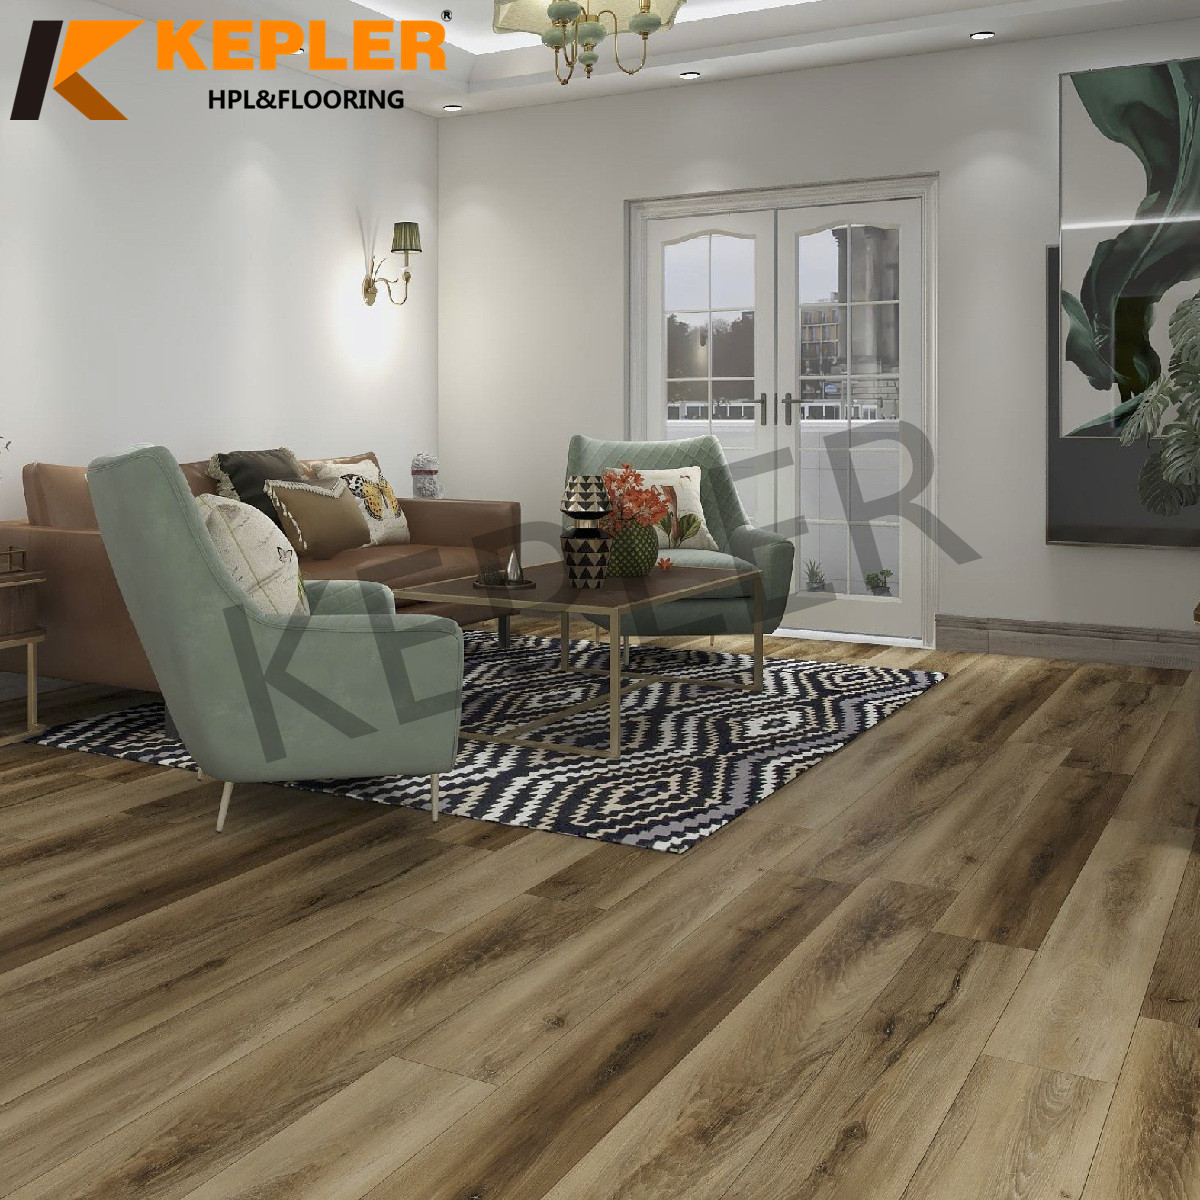 Kepler Hybrid RVP Rigid Vinyl Plank SPC Flooring 96118